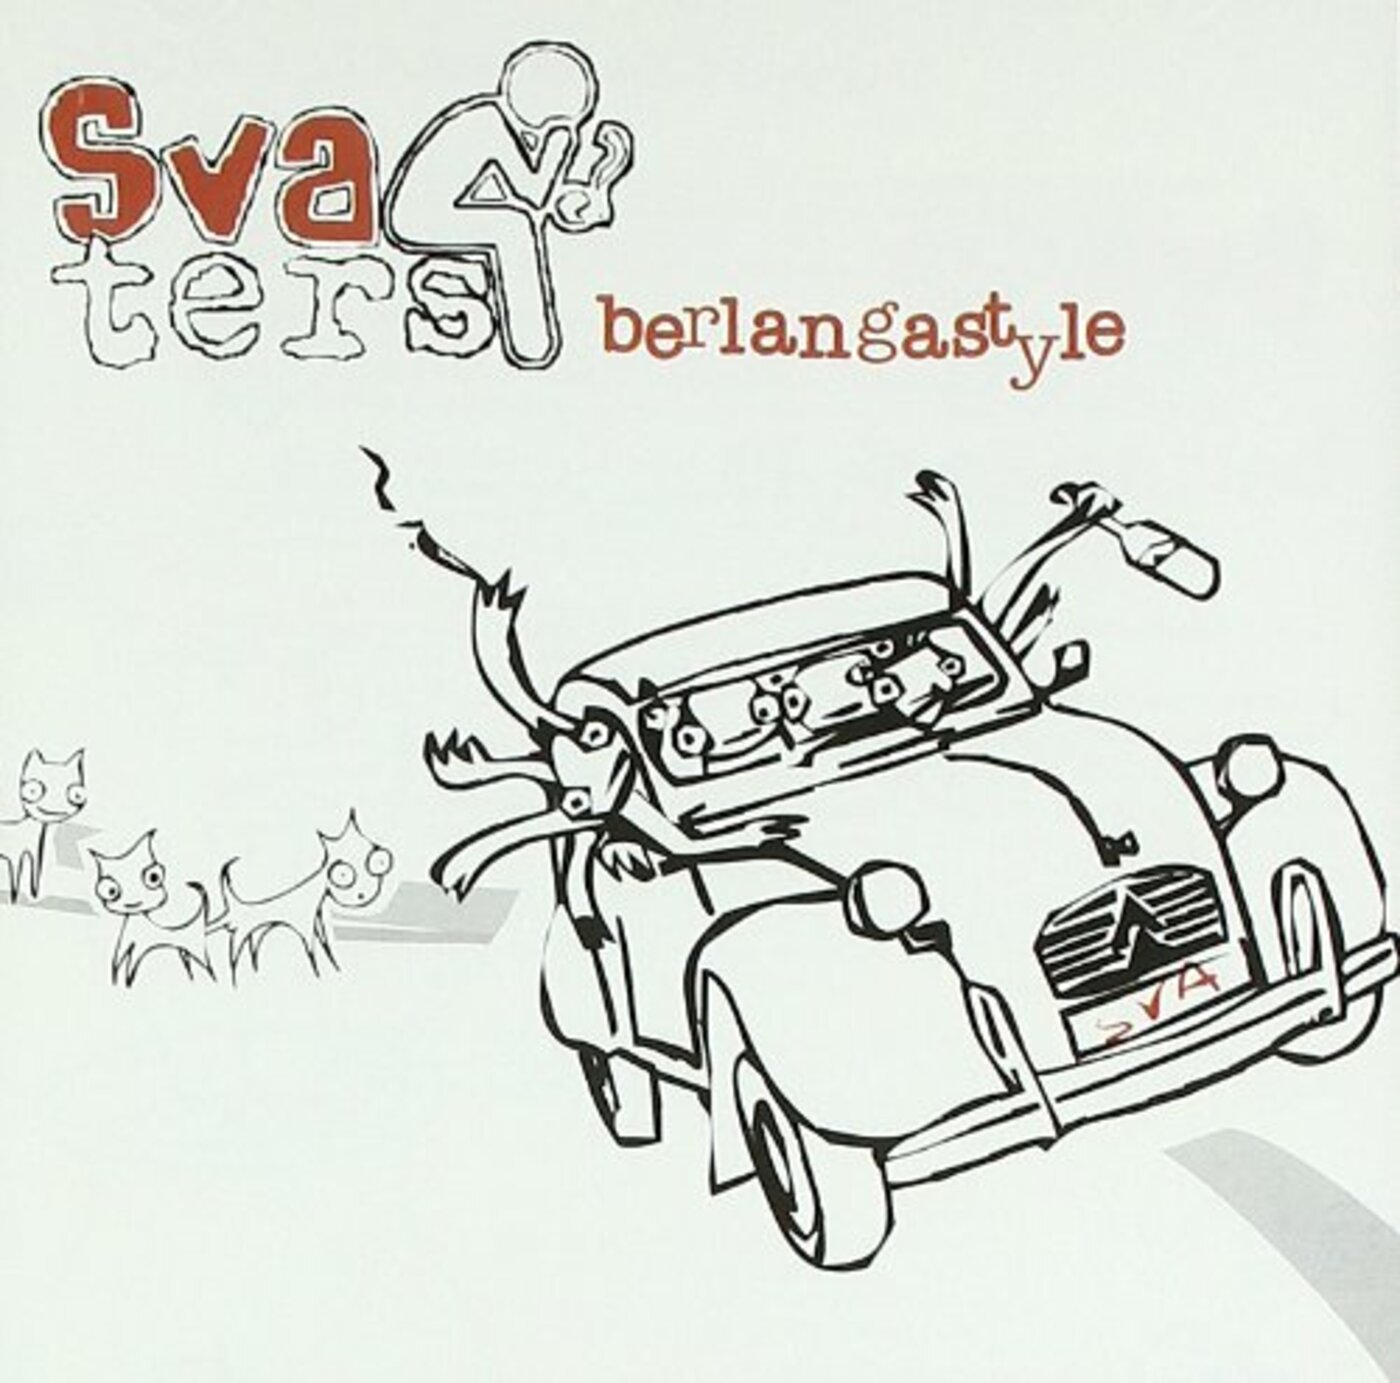 Sva-ters - Berlangastyle | musica en valencià